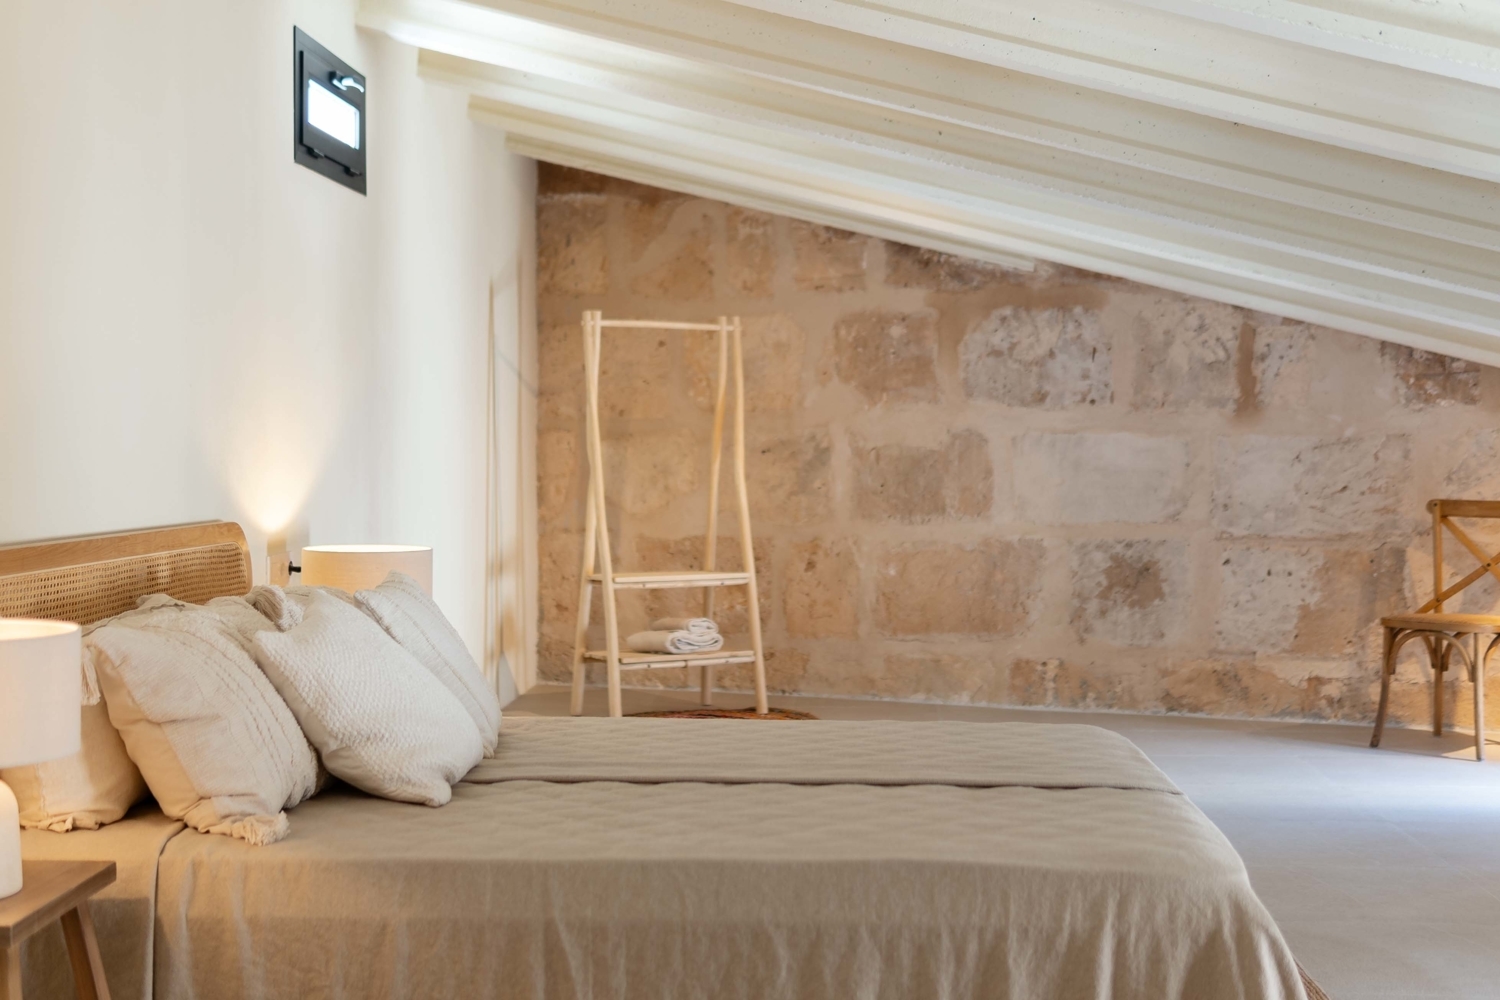 Traumhaft schönes Townhouse im charmanten Dorf Ariany im Ostens Mallorca